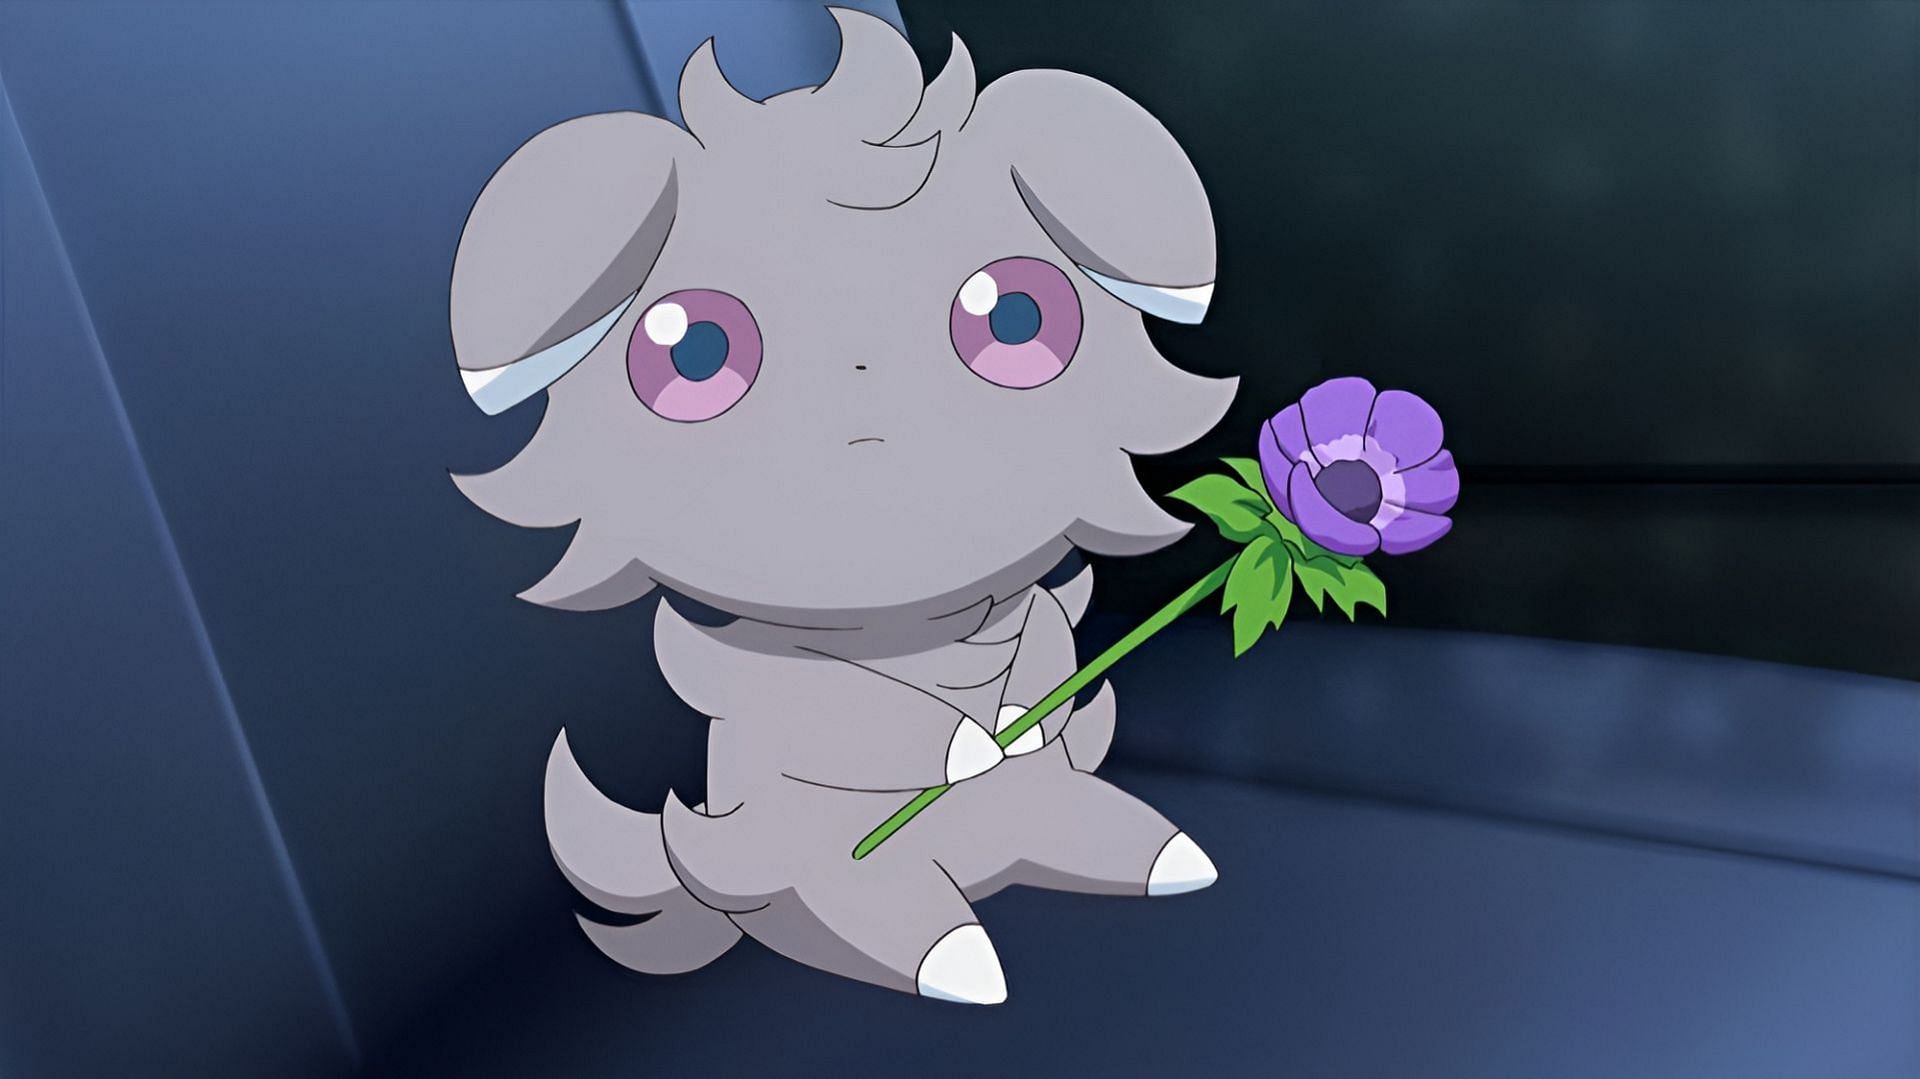 Questo episodio della serie XY ha saputo toccare le corde del cuore (Immagine tramite The Pokemon Company)